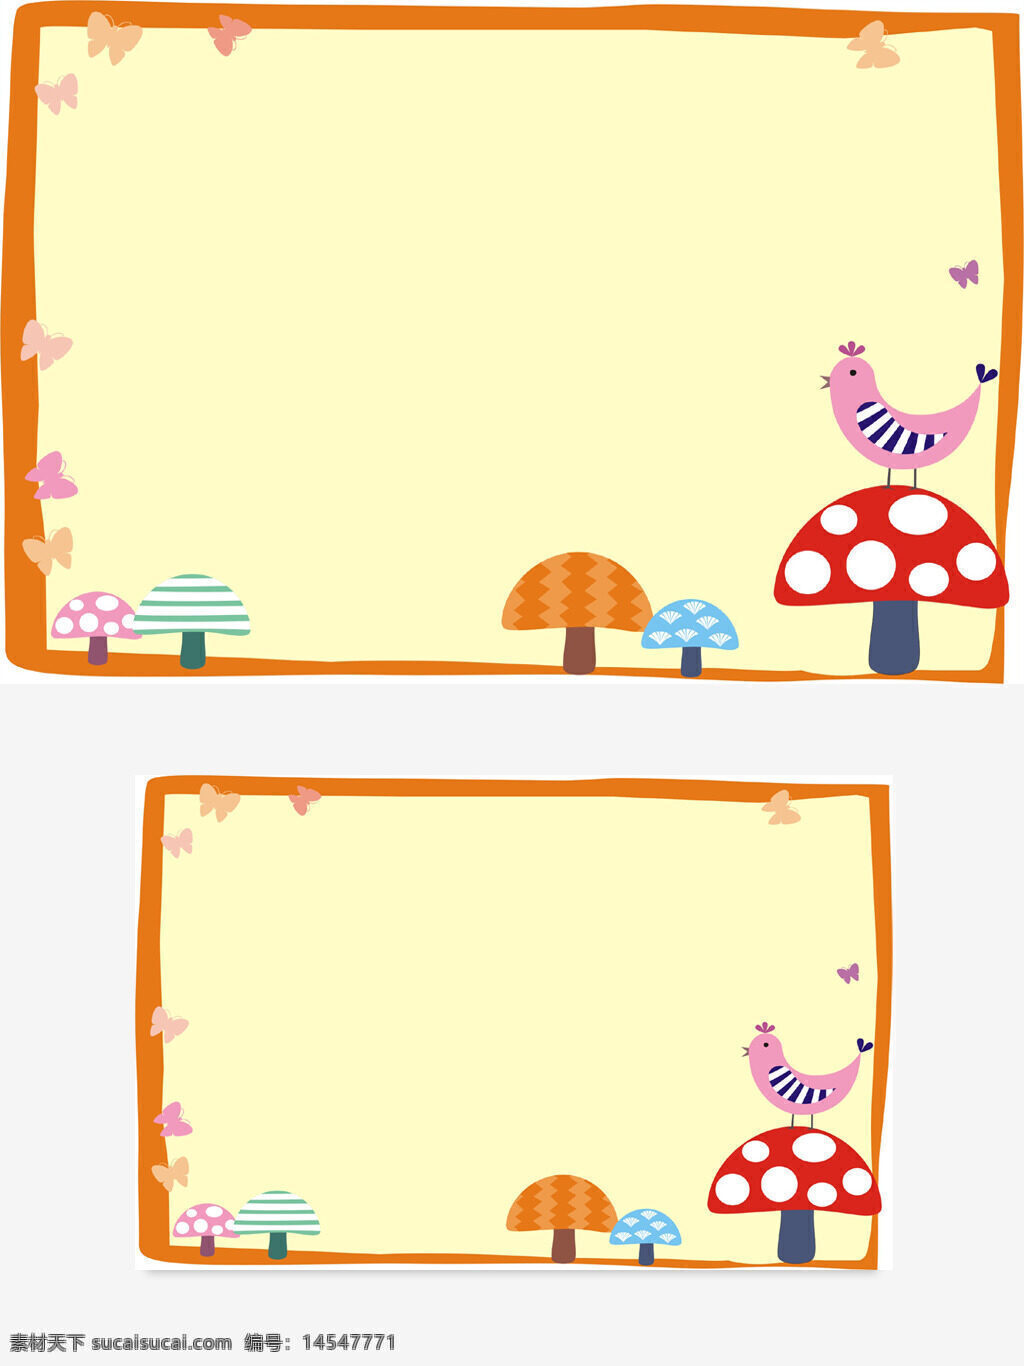 小鸟 蘑菇 蝴蝶 橙色 黄色 边框 矢量图 可变色 可变尺寸 彩色